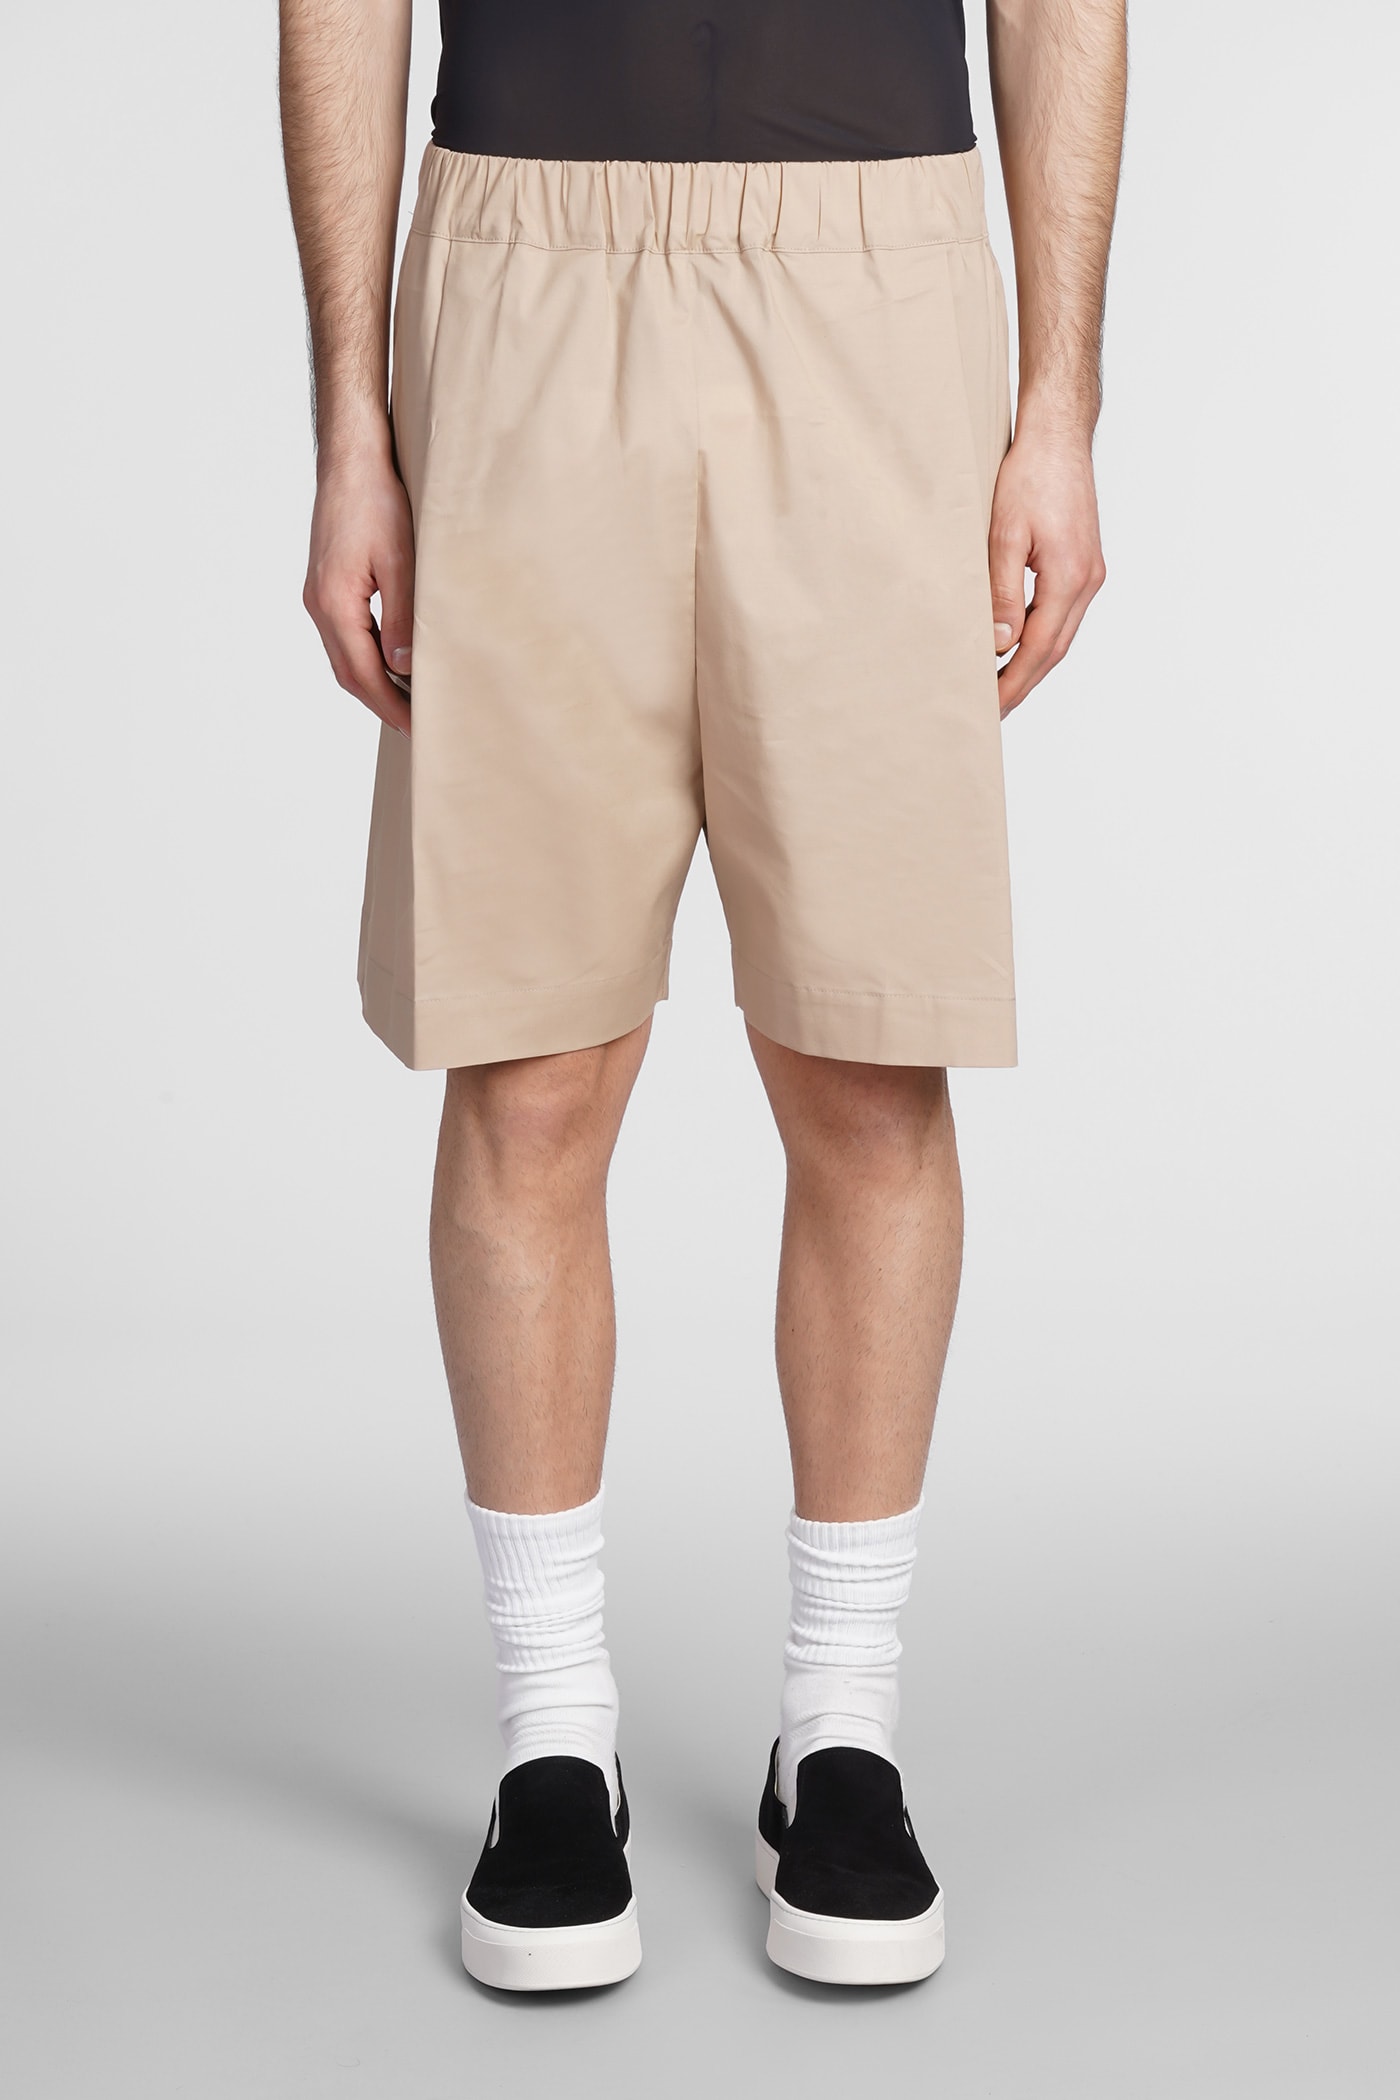 Laneus Shorts In Beige Cotton